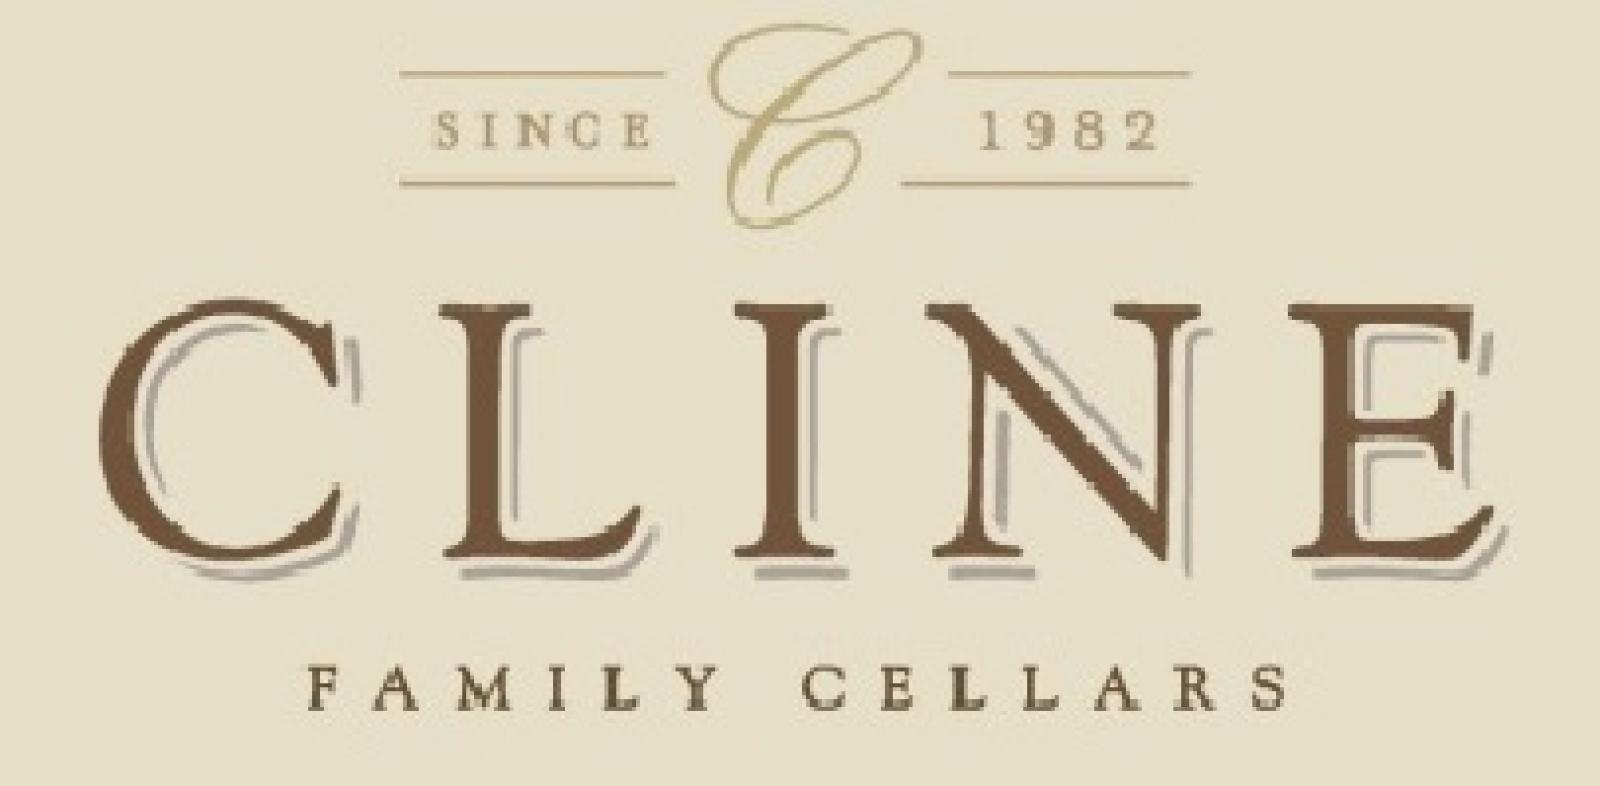 Cline Logo